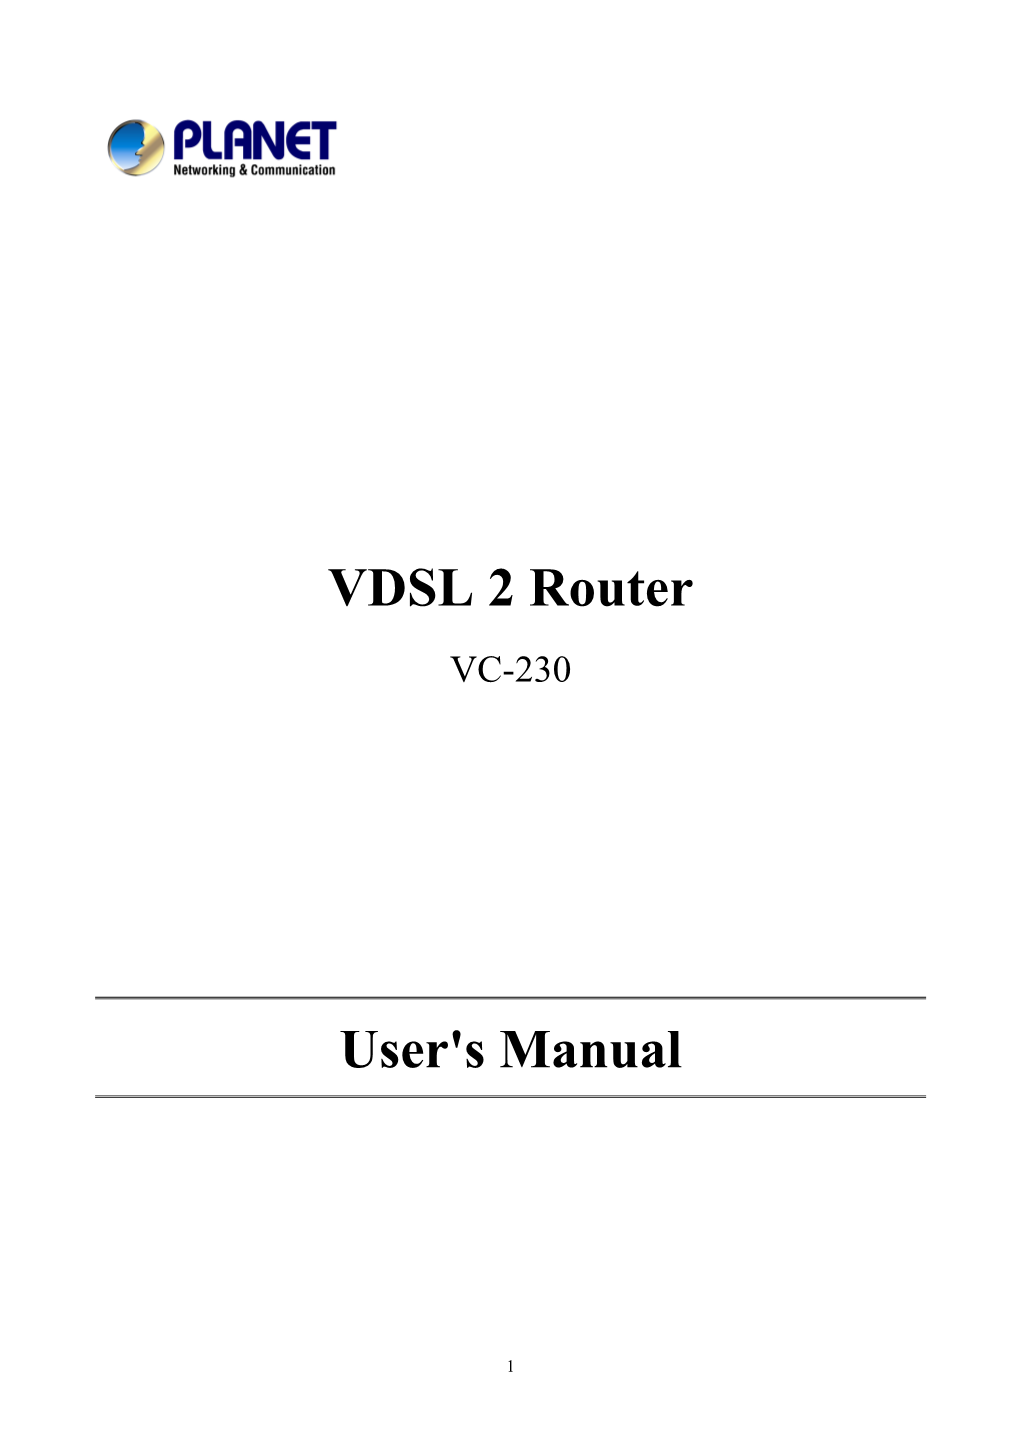 VDSL 2 Router User's Manual